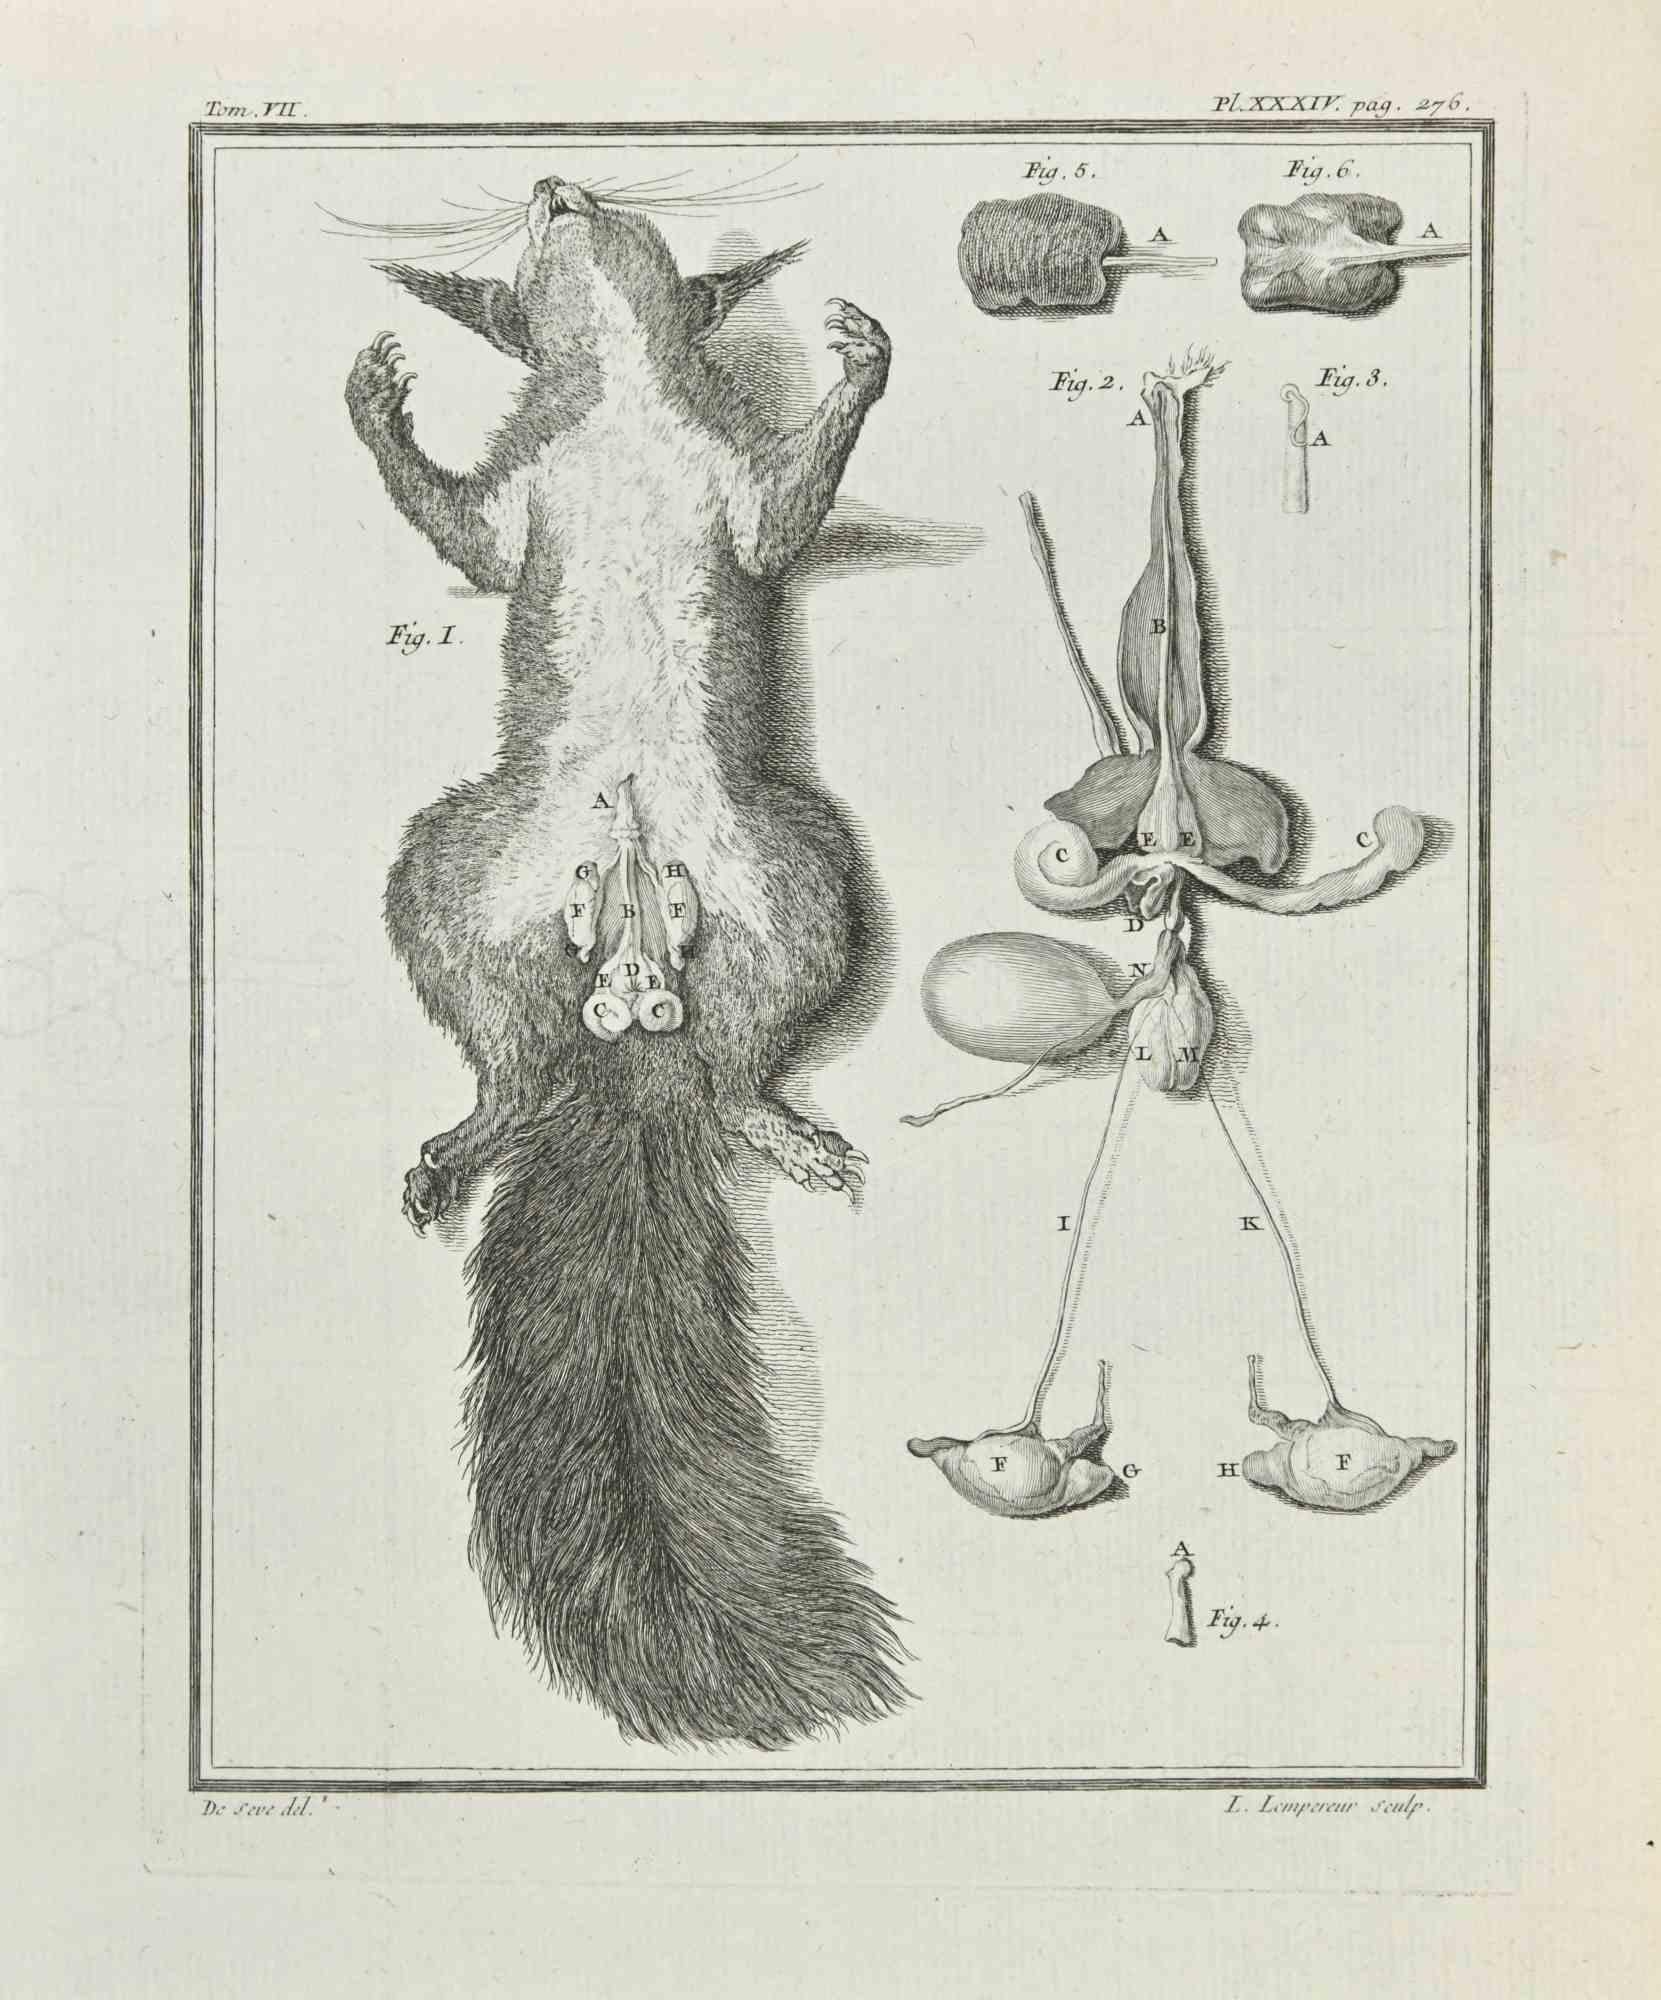 Die Anatomie der Tiere ist eine Radierung von Louis-Simon Lempereur aus dem Jahr 1771.

Es gehört zu der Reihe "Histoire naturelle, générale et particulière avec la description du Cabinet du Roi".

Signatur des Künstlers rechts unten